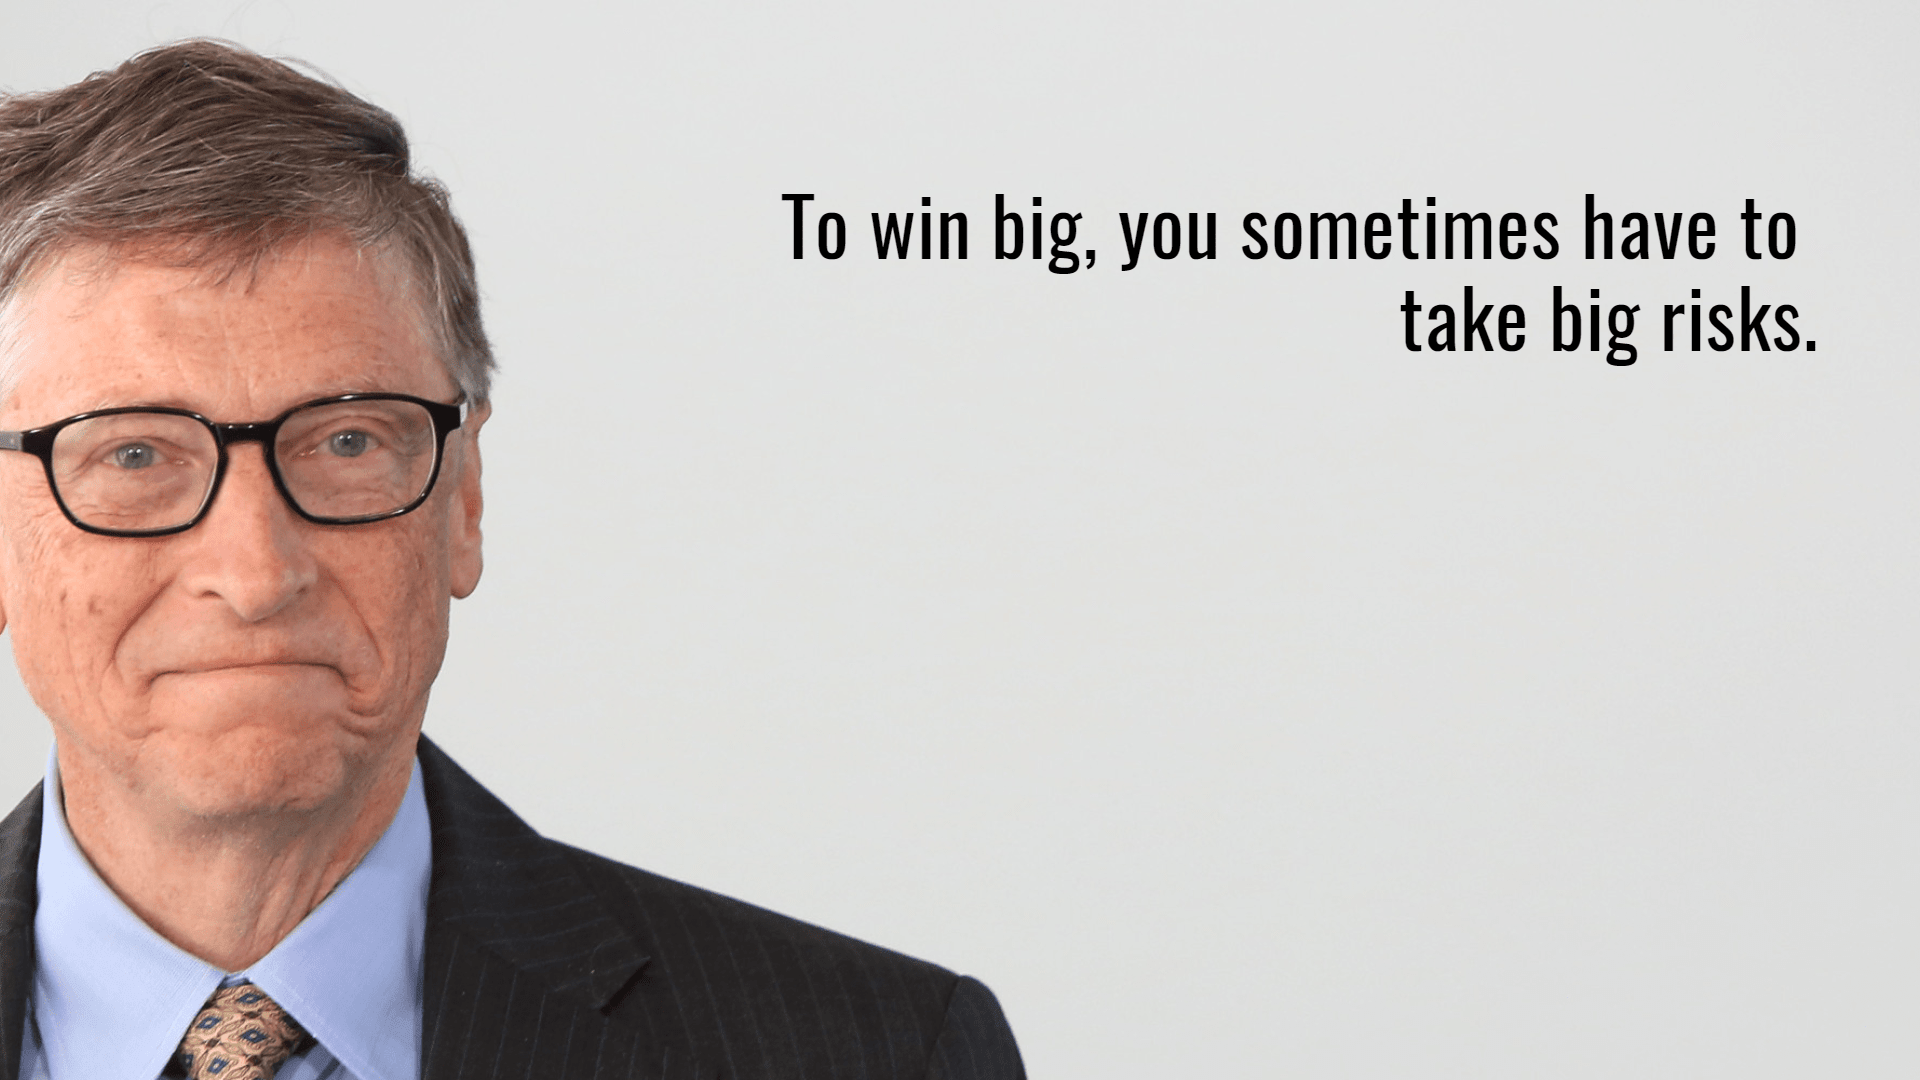 Bill Gates quote Design 